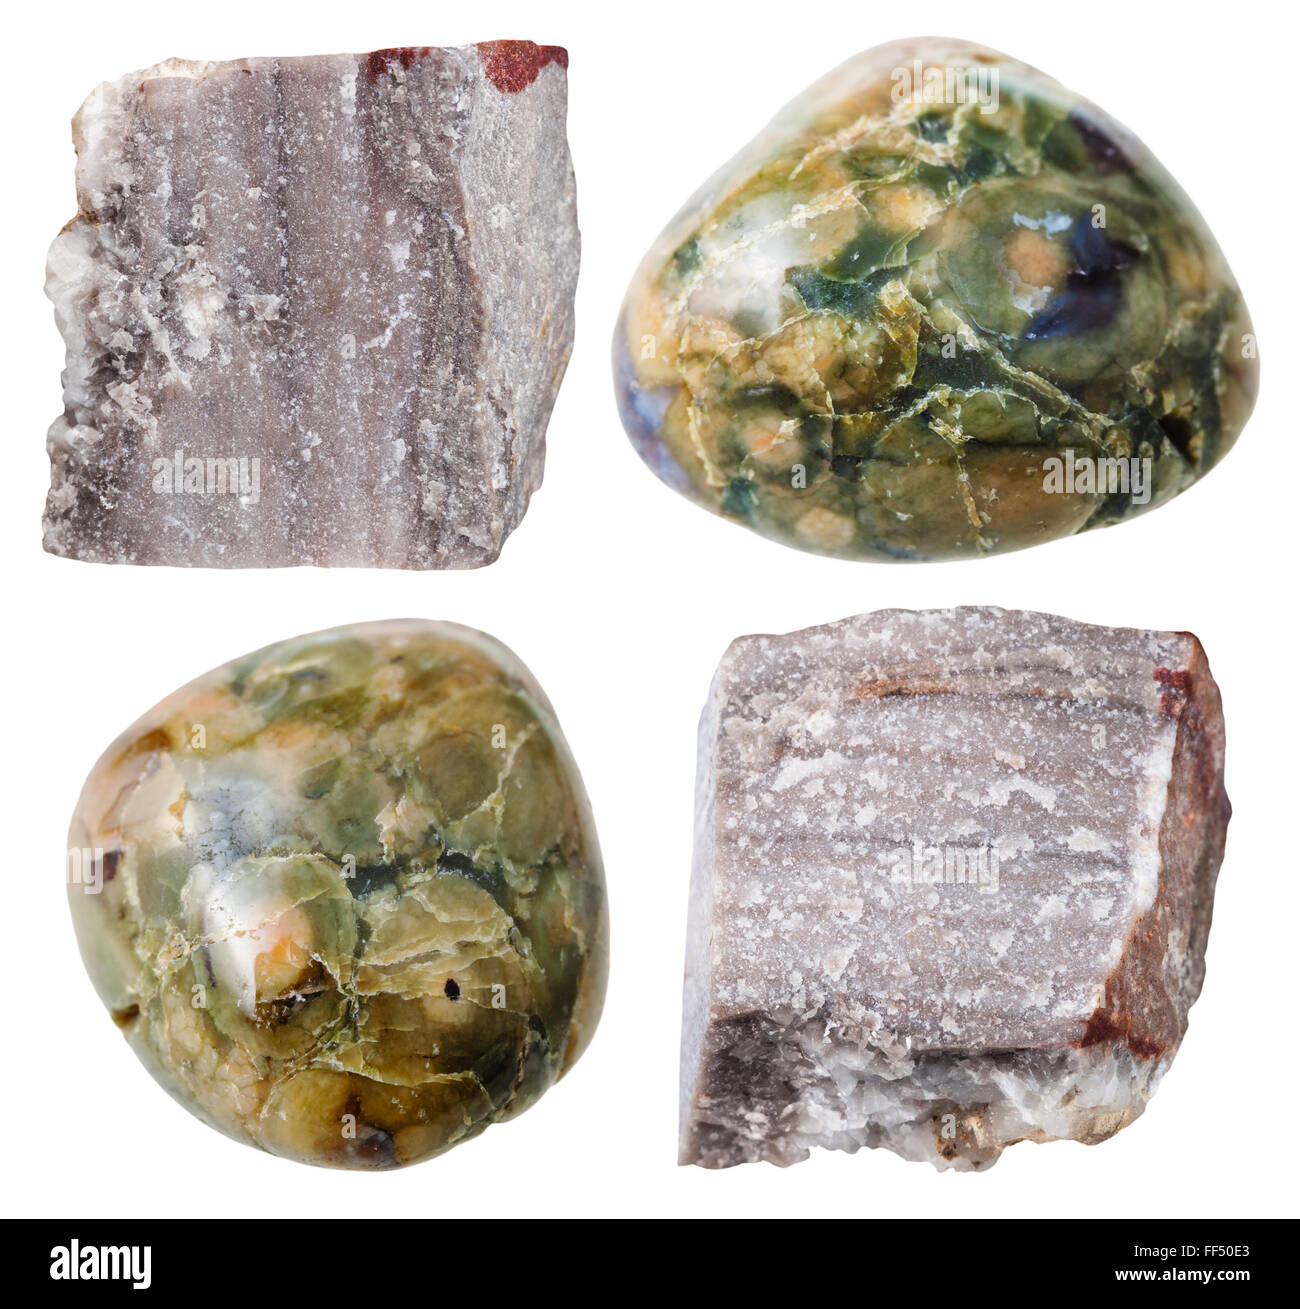 Satz von natürlichen mineralischen Steinen - Exemplare von Rhyolith getrommelt, Edelsteine und Felsen isoliert auf weißem Hintergrund Stockfoto